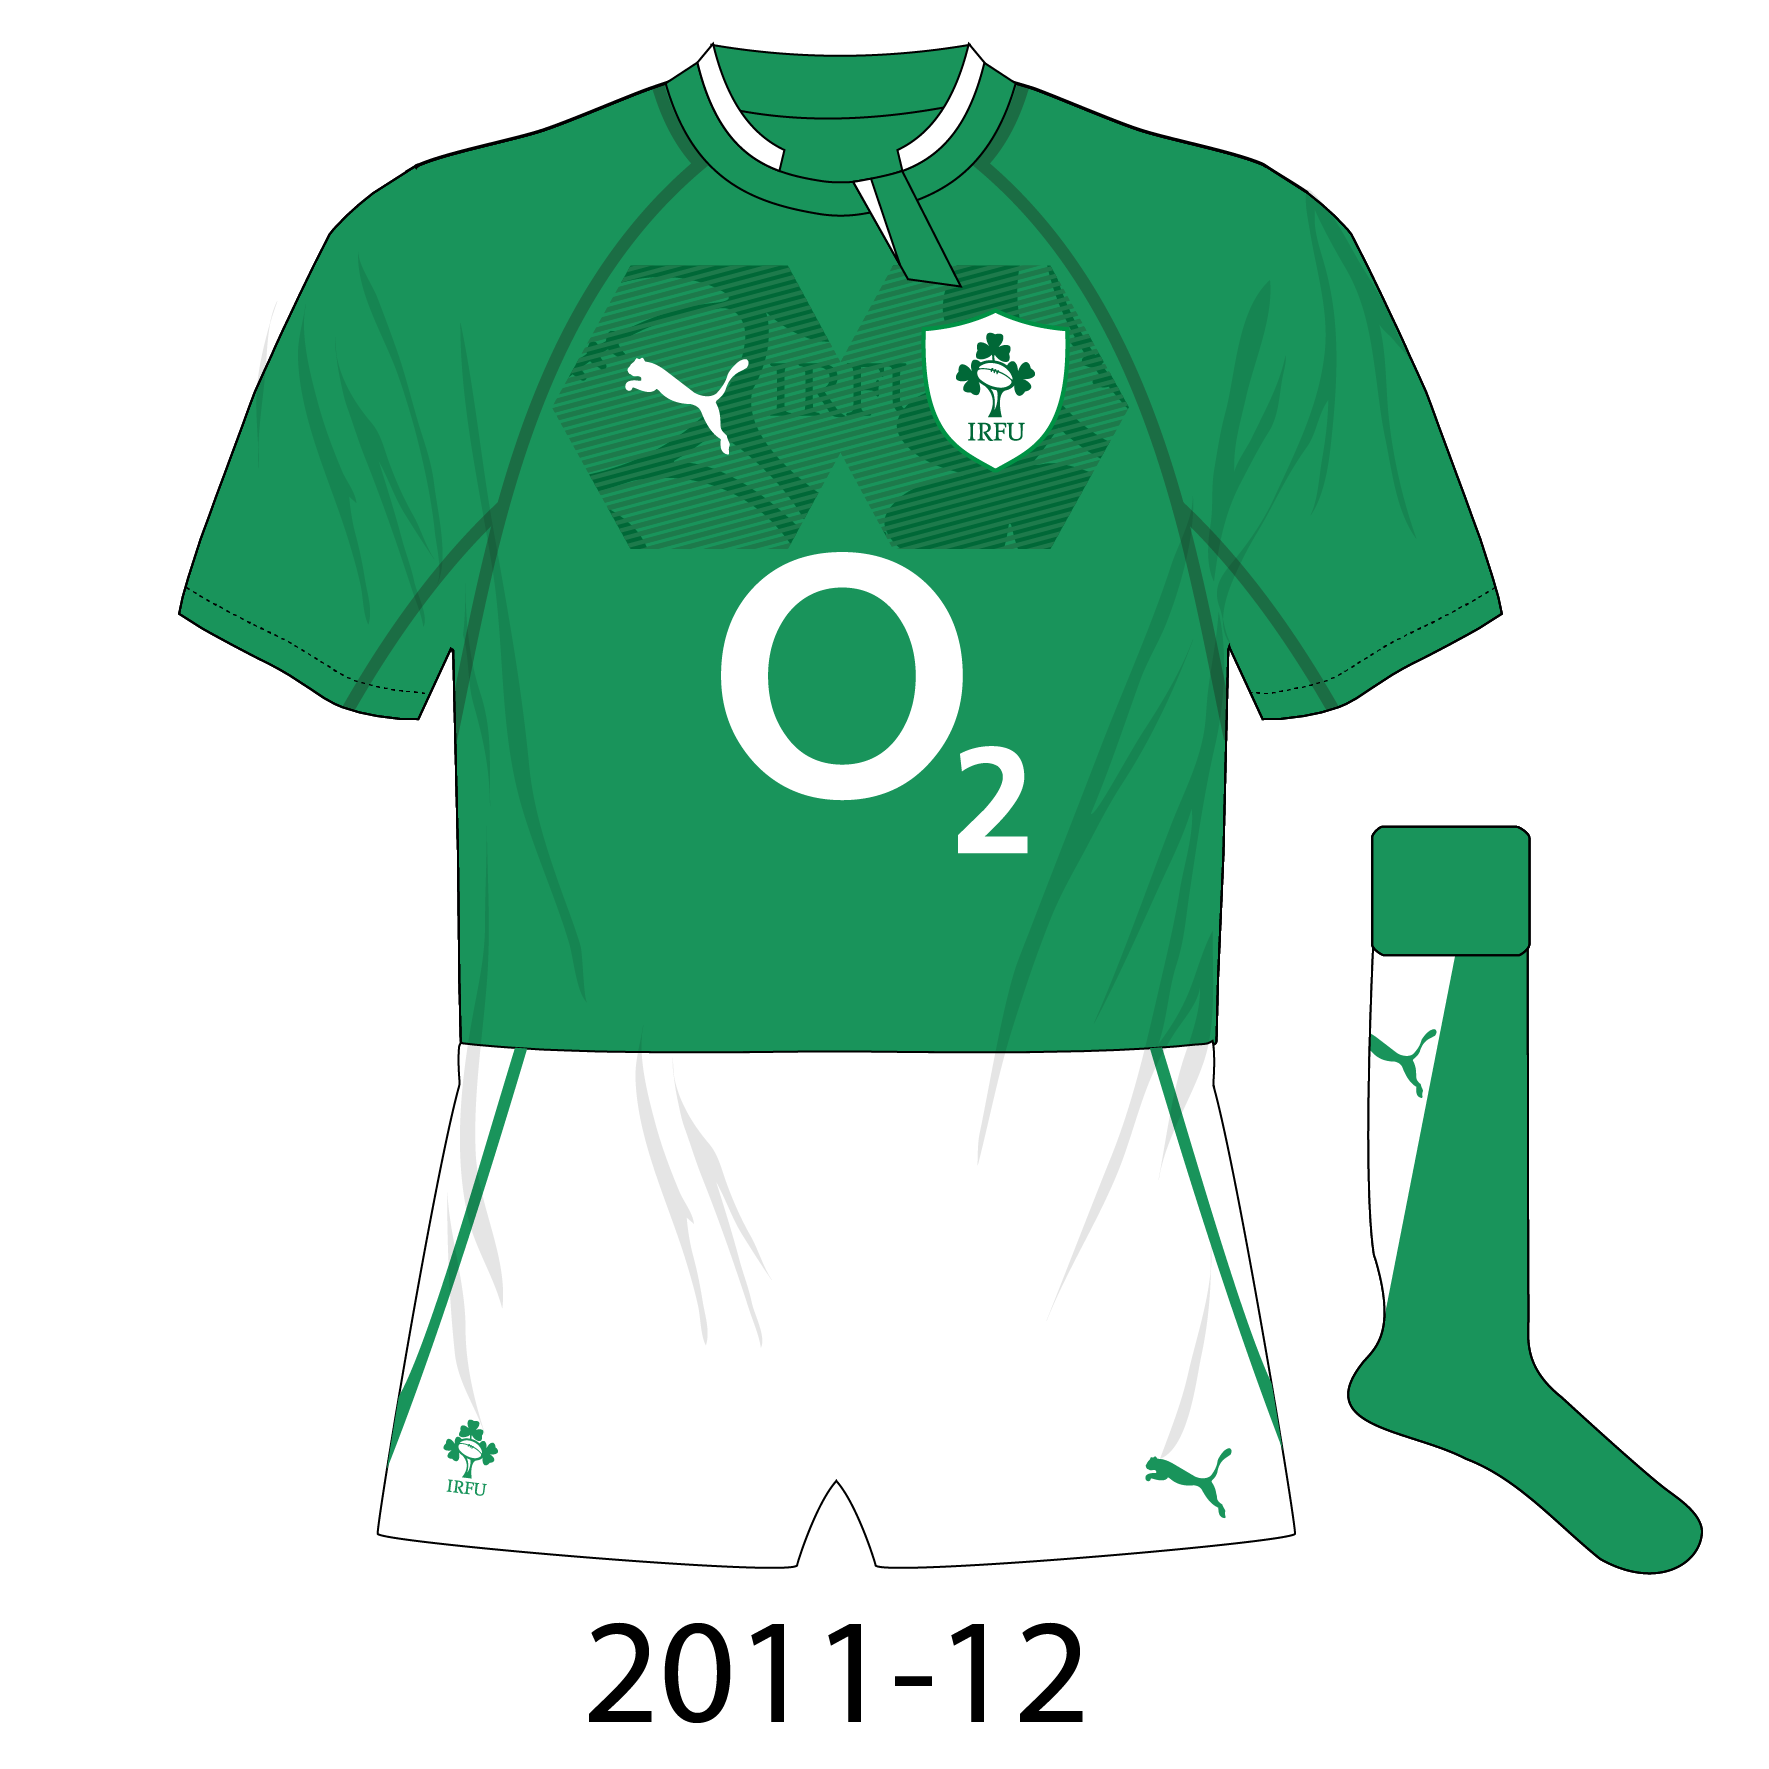 puma ireland rugby shirt